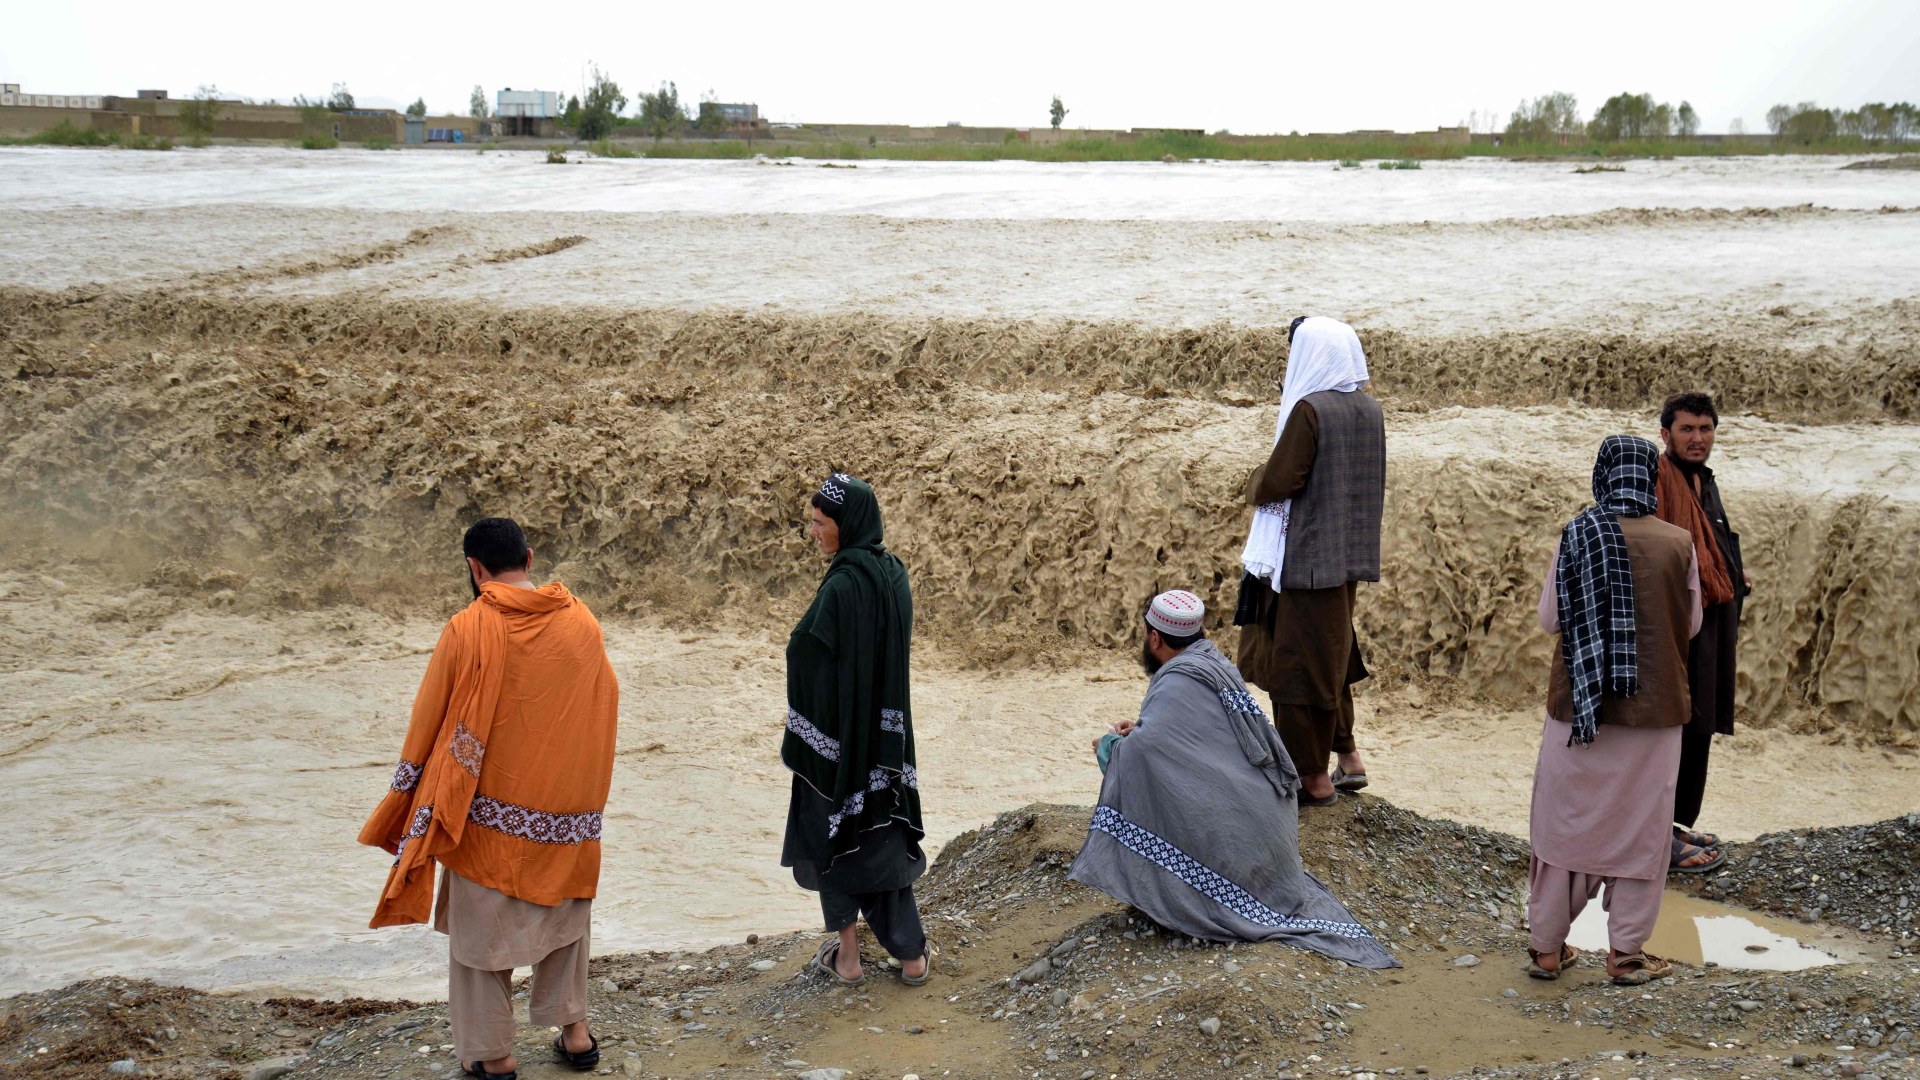 Menschen in Afghanistan stehen vor einem Wasserfall. Das Wasser ist braun und voller Sedimente.